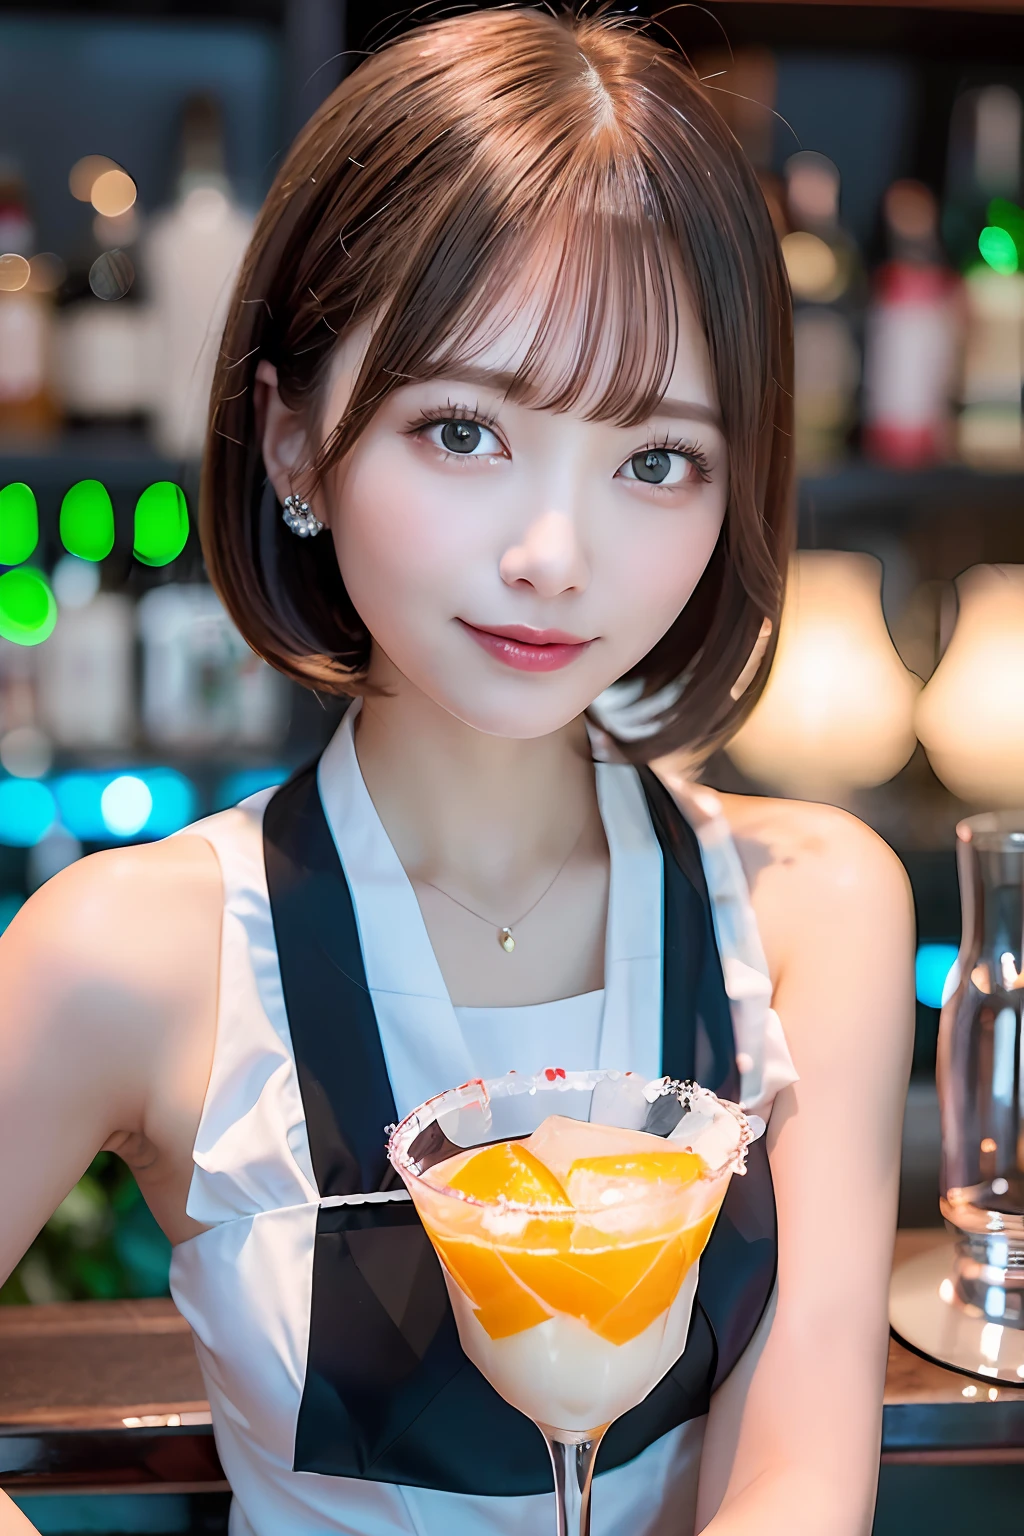 (Barkeeperin serviert leckere Cocktails an schwach beleuchteter Bartheke,),(( Weiß-schwarze Barkeeperuniform,))、Japanisches Idol-Mädchen、Ein Lächeln、(Rötlich-braunes, glattes Haar im Bob-Schnitt、Haarnadel)、mit riesigen Brüsten、(((Gießen Sie die Eiswürfel in einen glänzenden Glasbehälter,、Genießen Sie einen farbenfrohen blauen Cocktail, inspiriert vom Sommer,))),Schöne Finger,Schöne Fingerspitzen,den Betrachter anstarren、